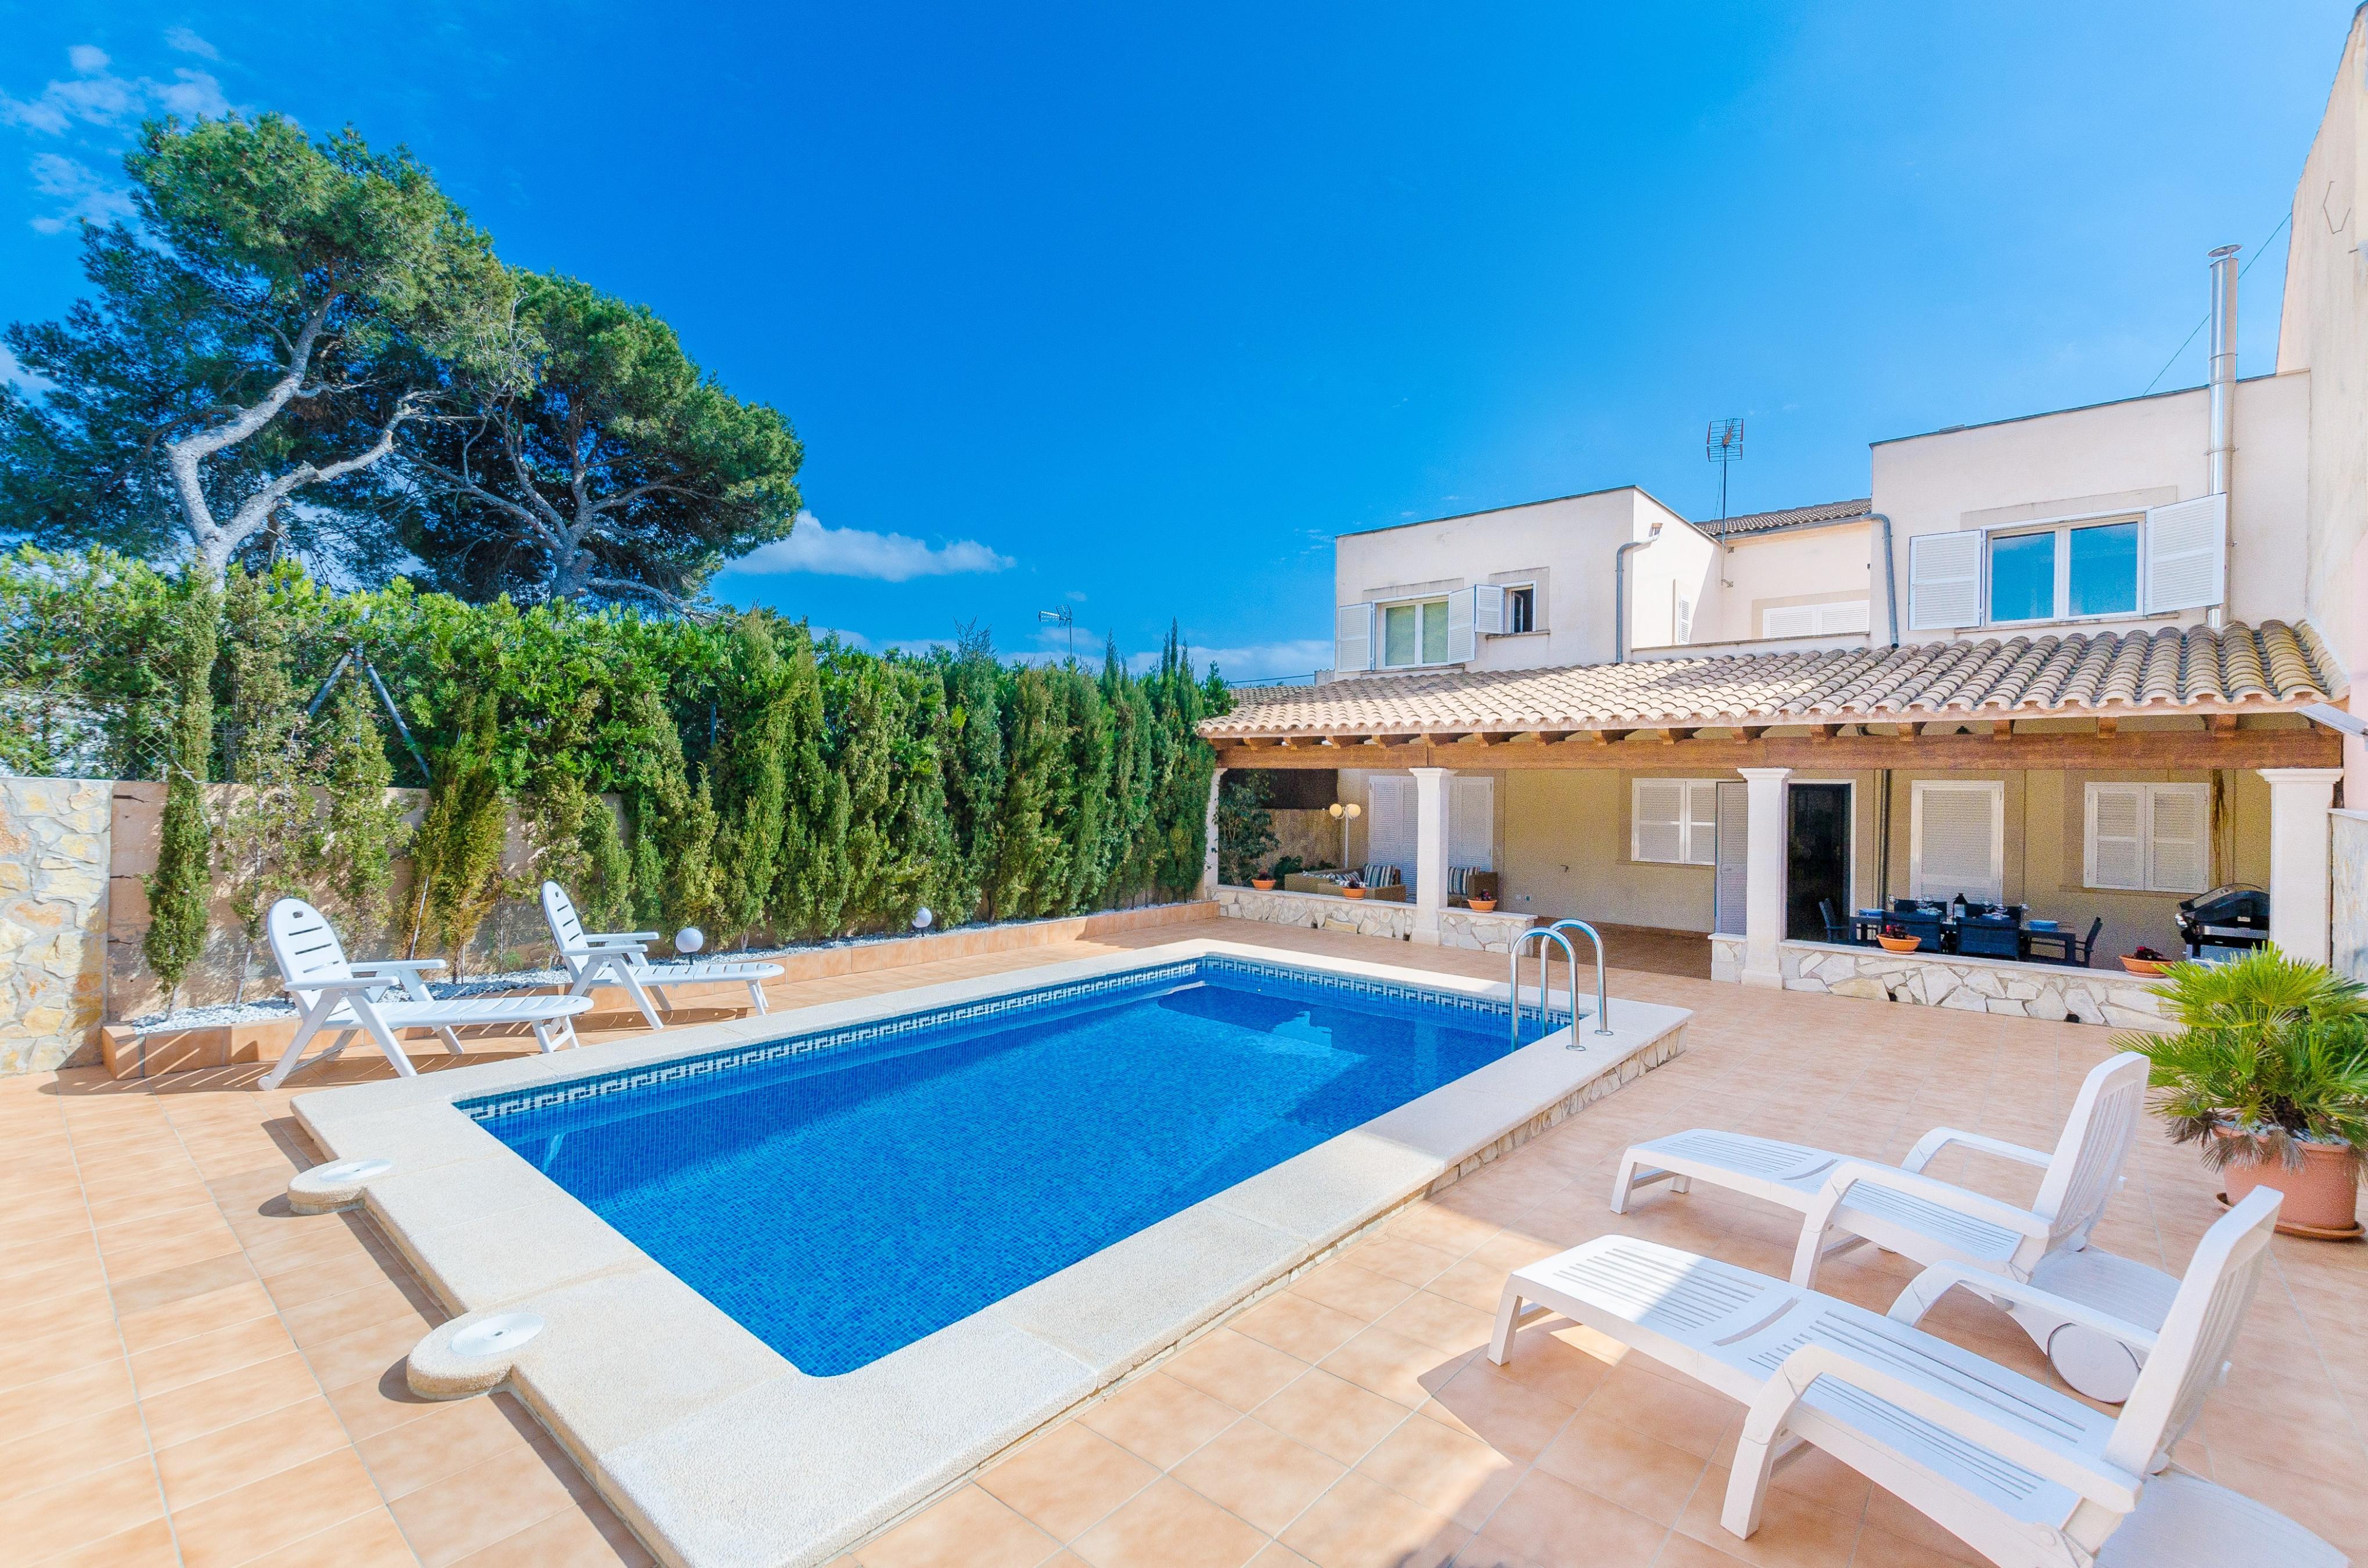 Property Image 1 - VILLA GLORIA - Villa with private pool in Cala Pi - Llucmajor. Free WiFi